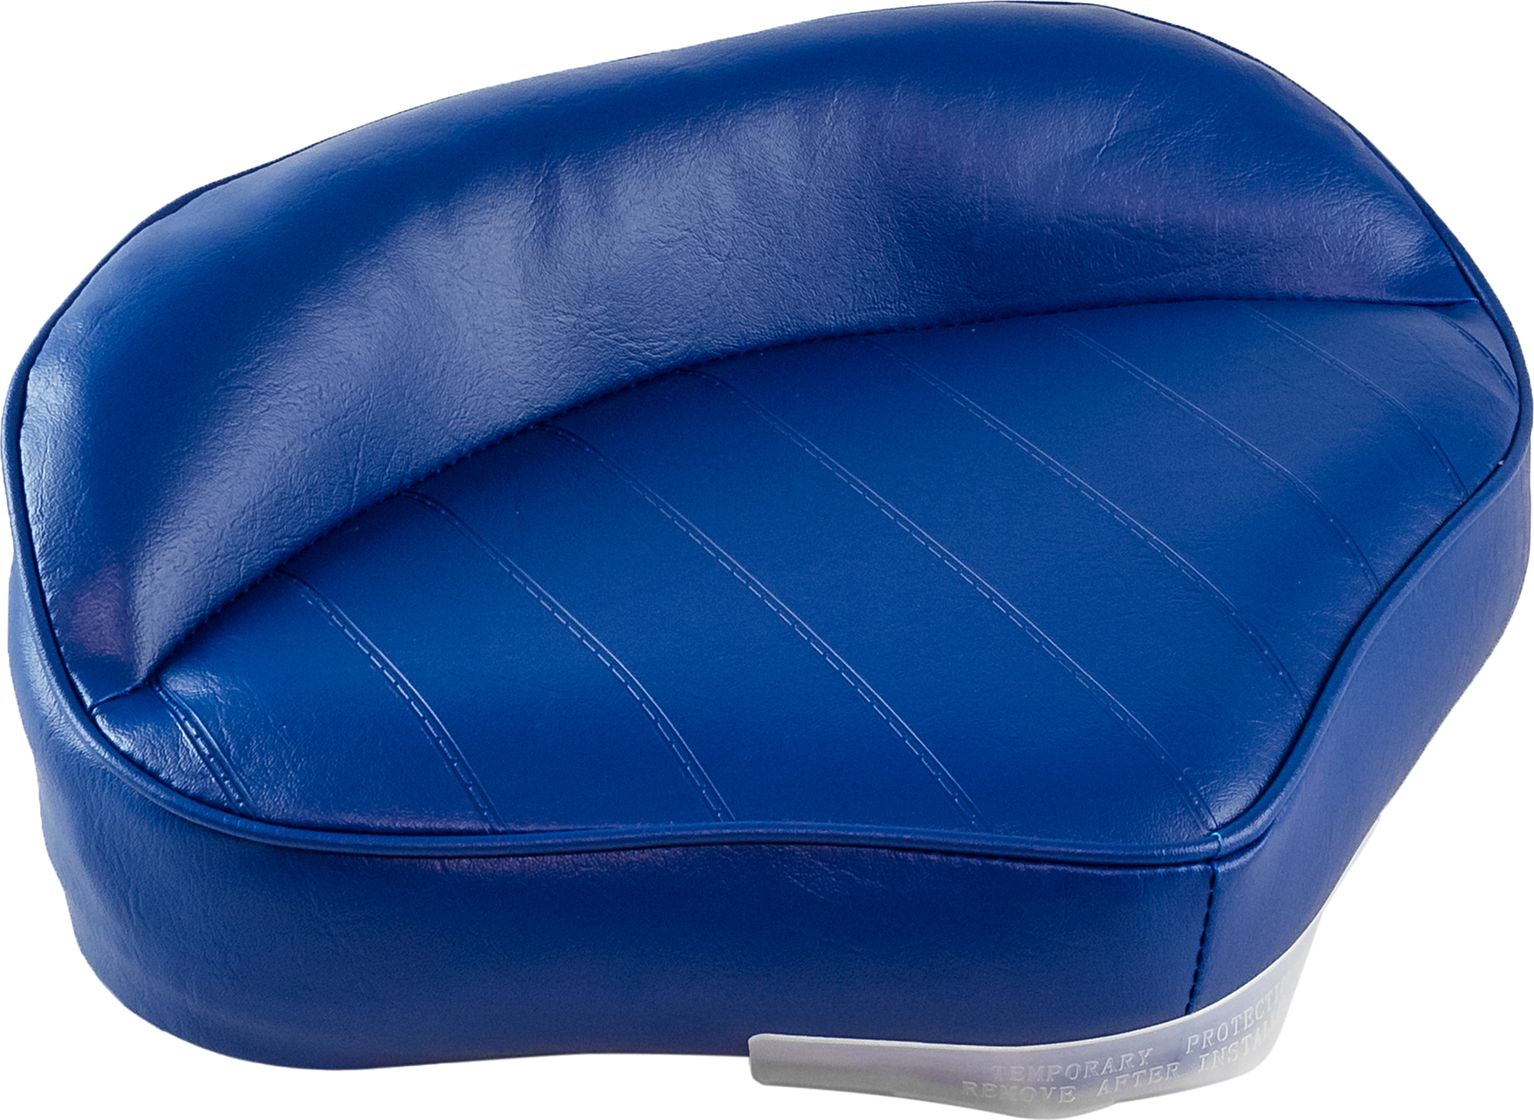 Сиденье мягкое PRO CASTING, обивка синий винил 75104B кресло складное мягкое premium high back boat seat белый синий 75128wbc